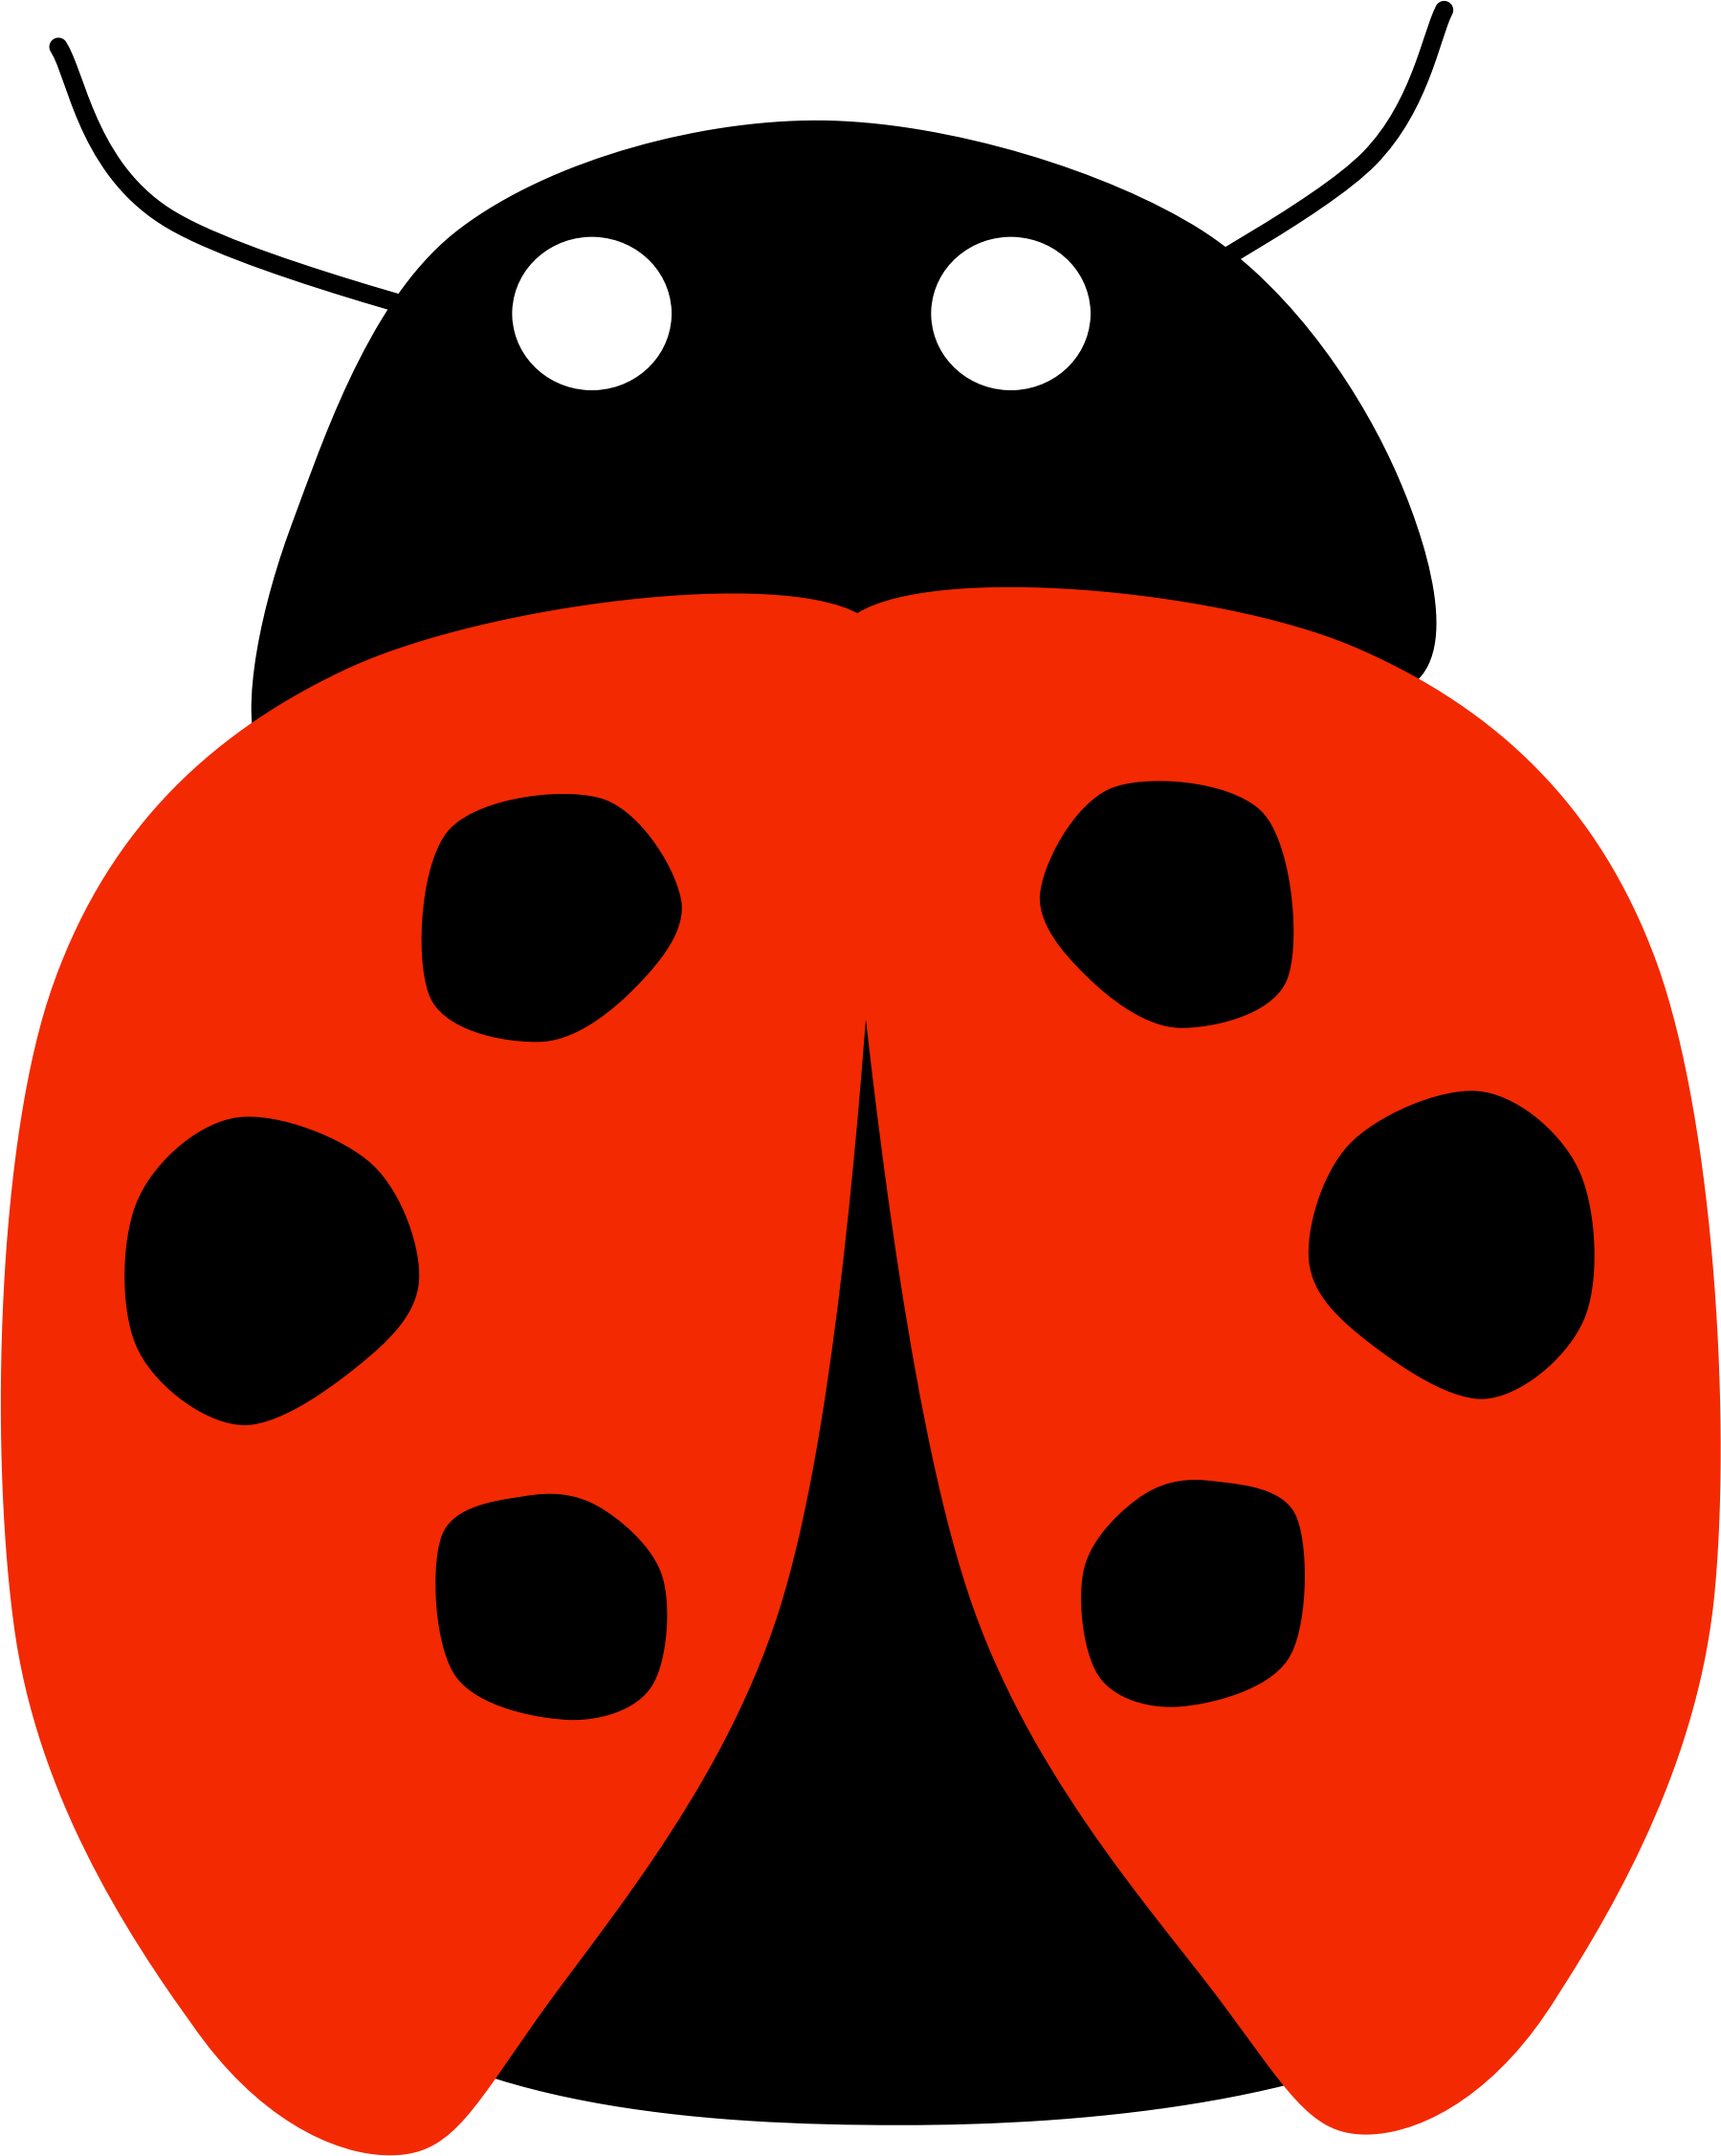 Free Lady Bug - Transparent Background Ladybug Clipart (1799x2254)